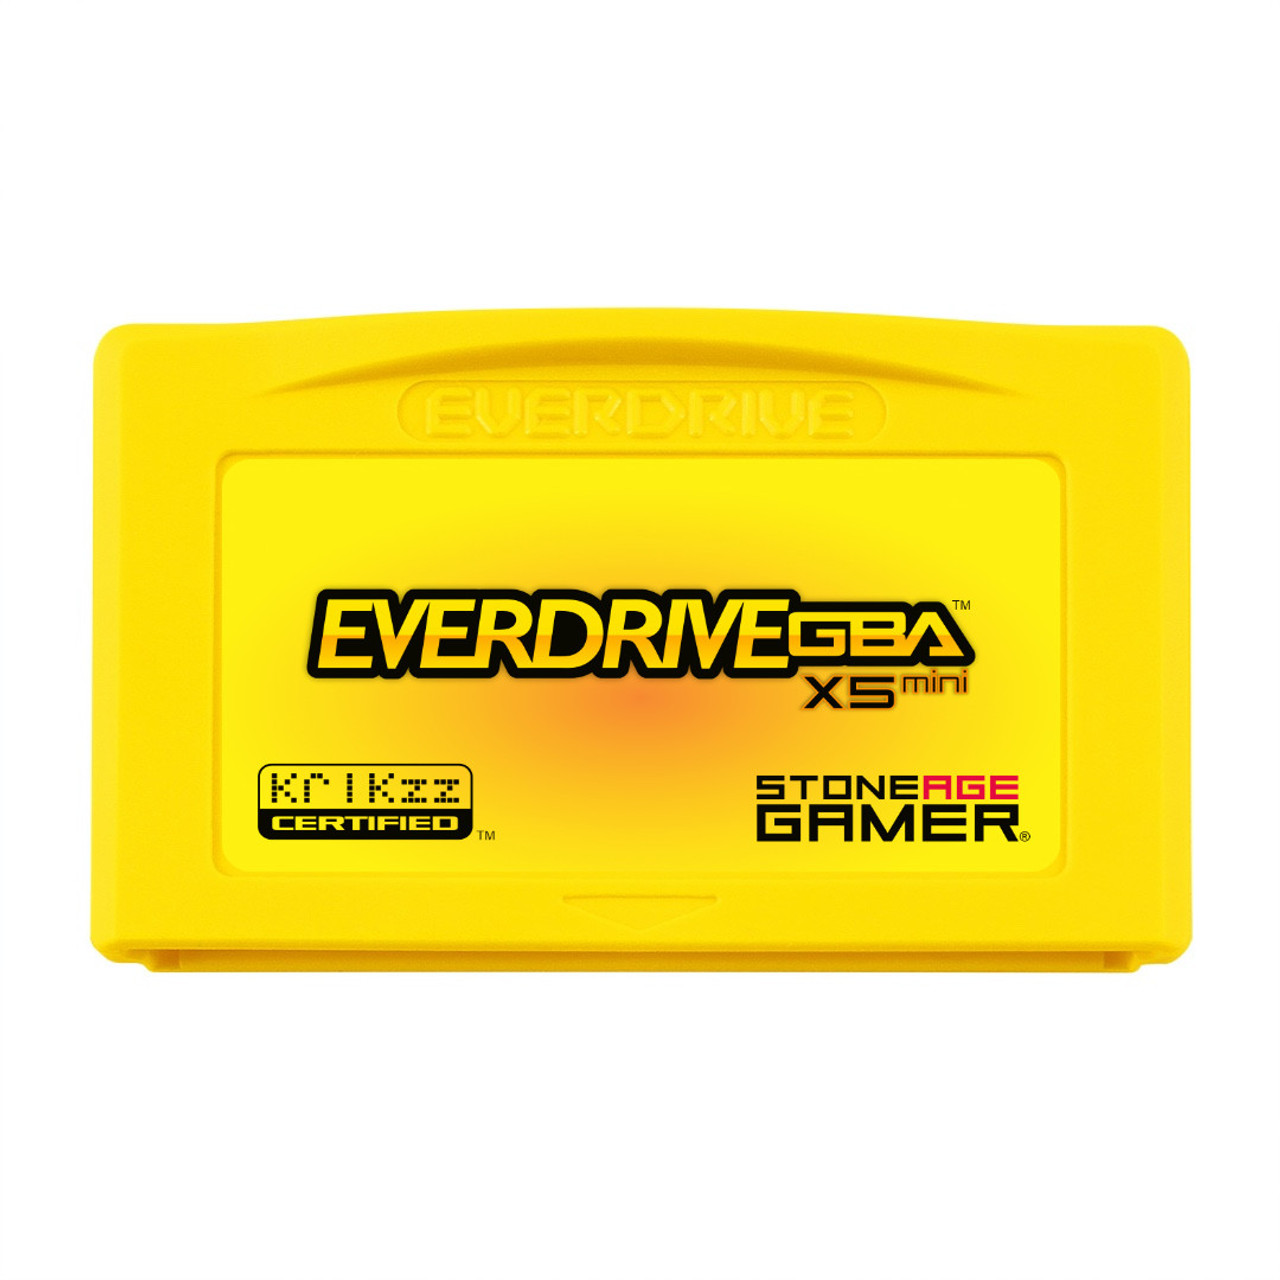 EverDrive-GBA X5 Mini (Blazing) Stone Age Gamer